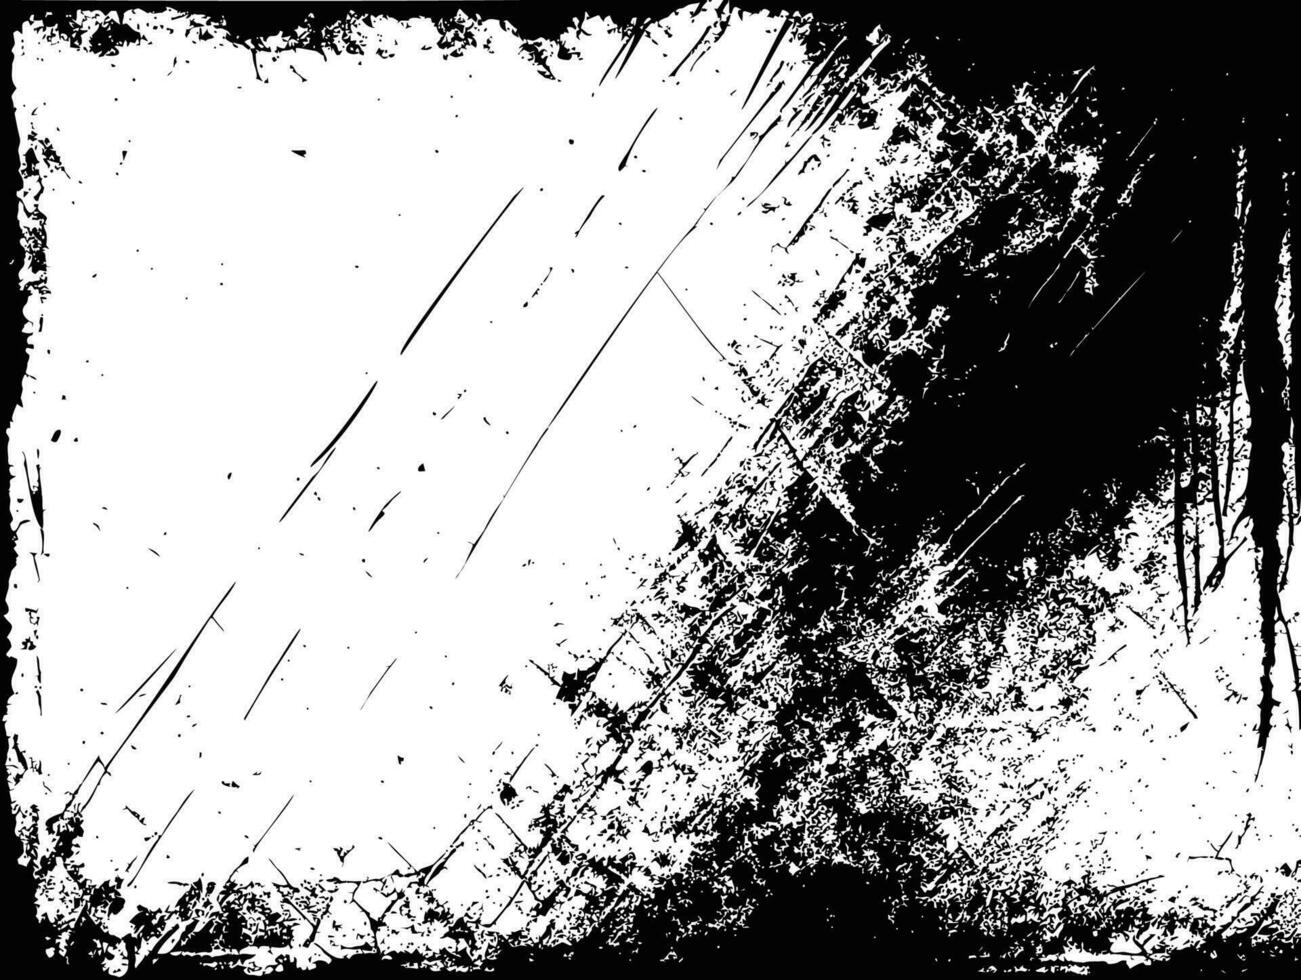 en svart och vit vektor grungy bakgrund, skärvor, repor på papper, eller metall, mörk design, stor diagonal borsta slag, bieffekter, trasig kanter, bruten, graverat textur.